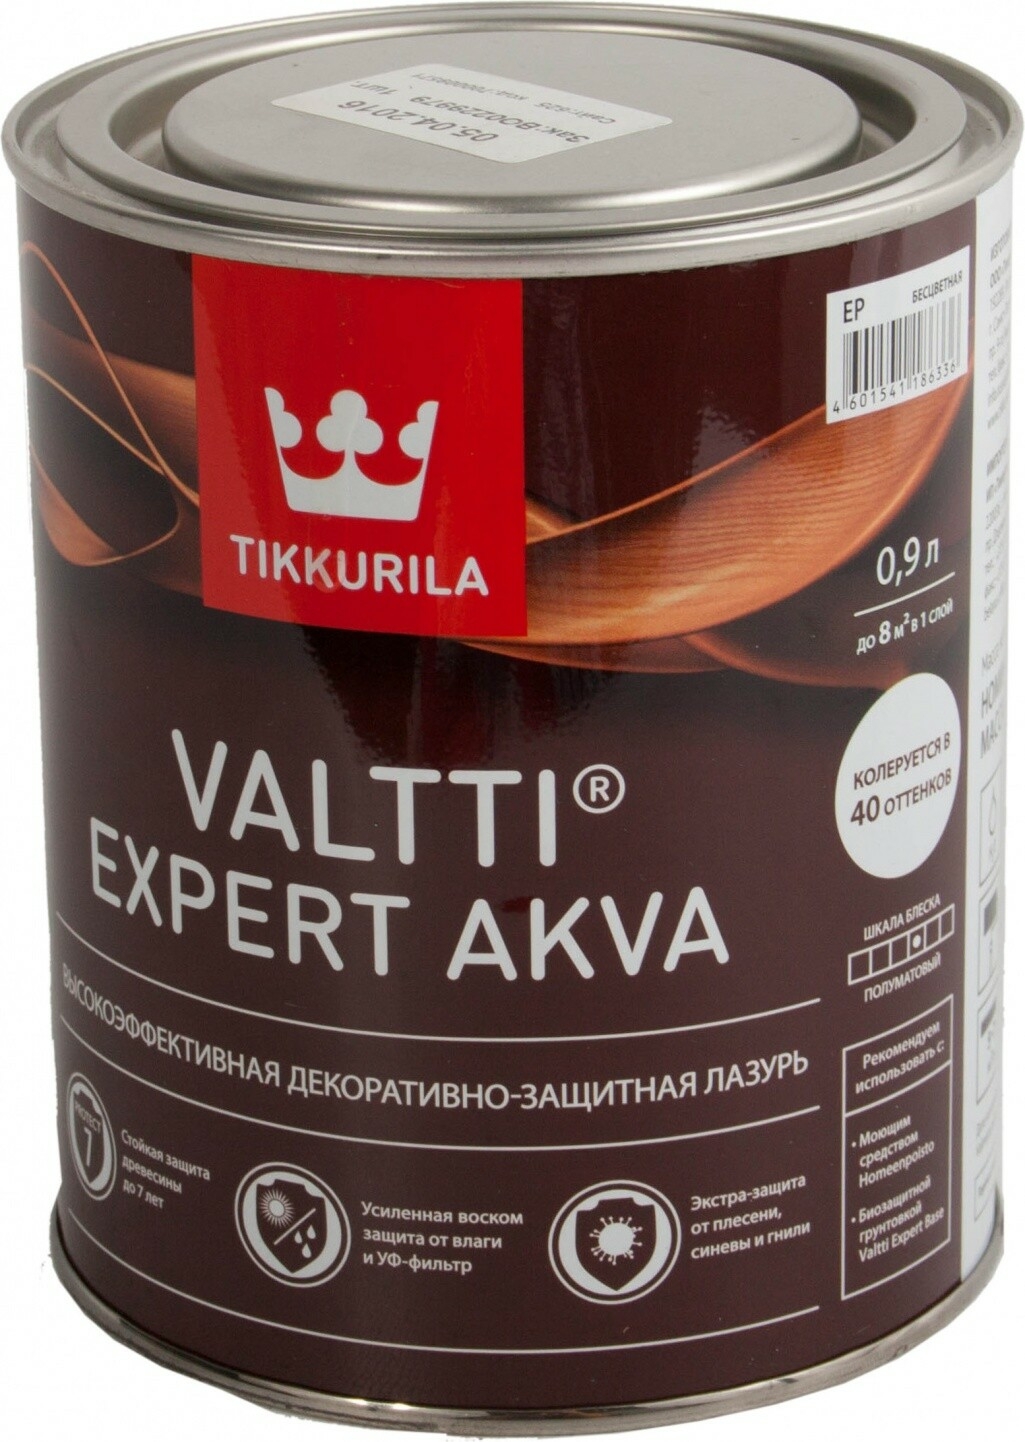 Лазурь высокоэффективная декоративно-защитная TIKKURILA Valtti Expert Akva полуматовая бесцветная 0,9 л (17053) - Фото 2